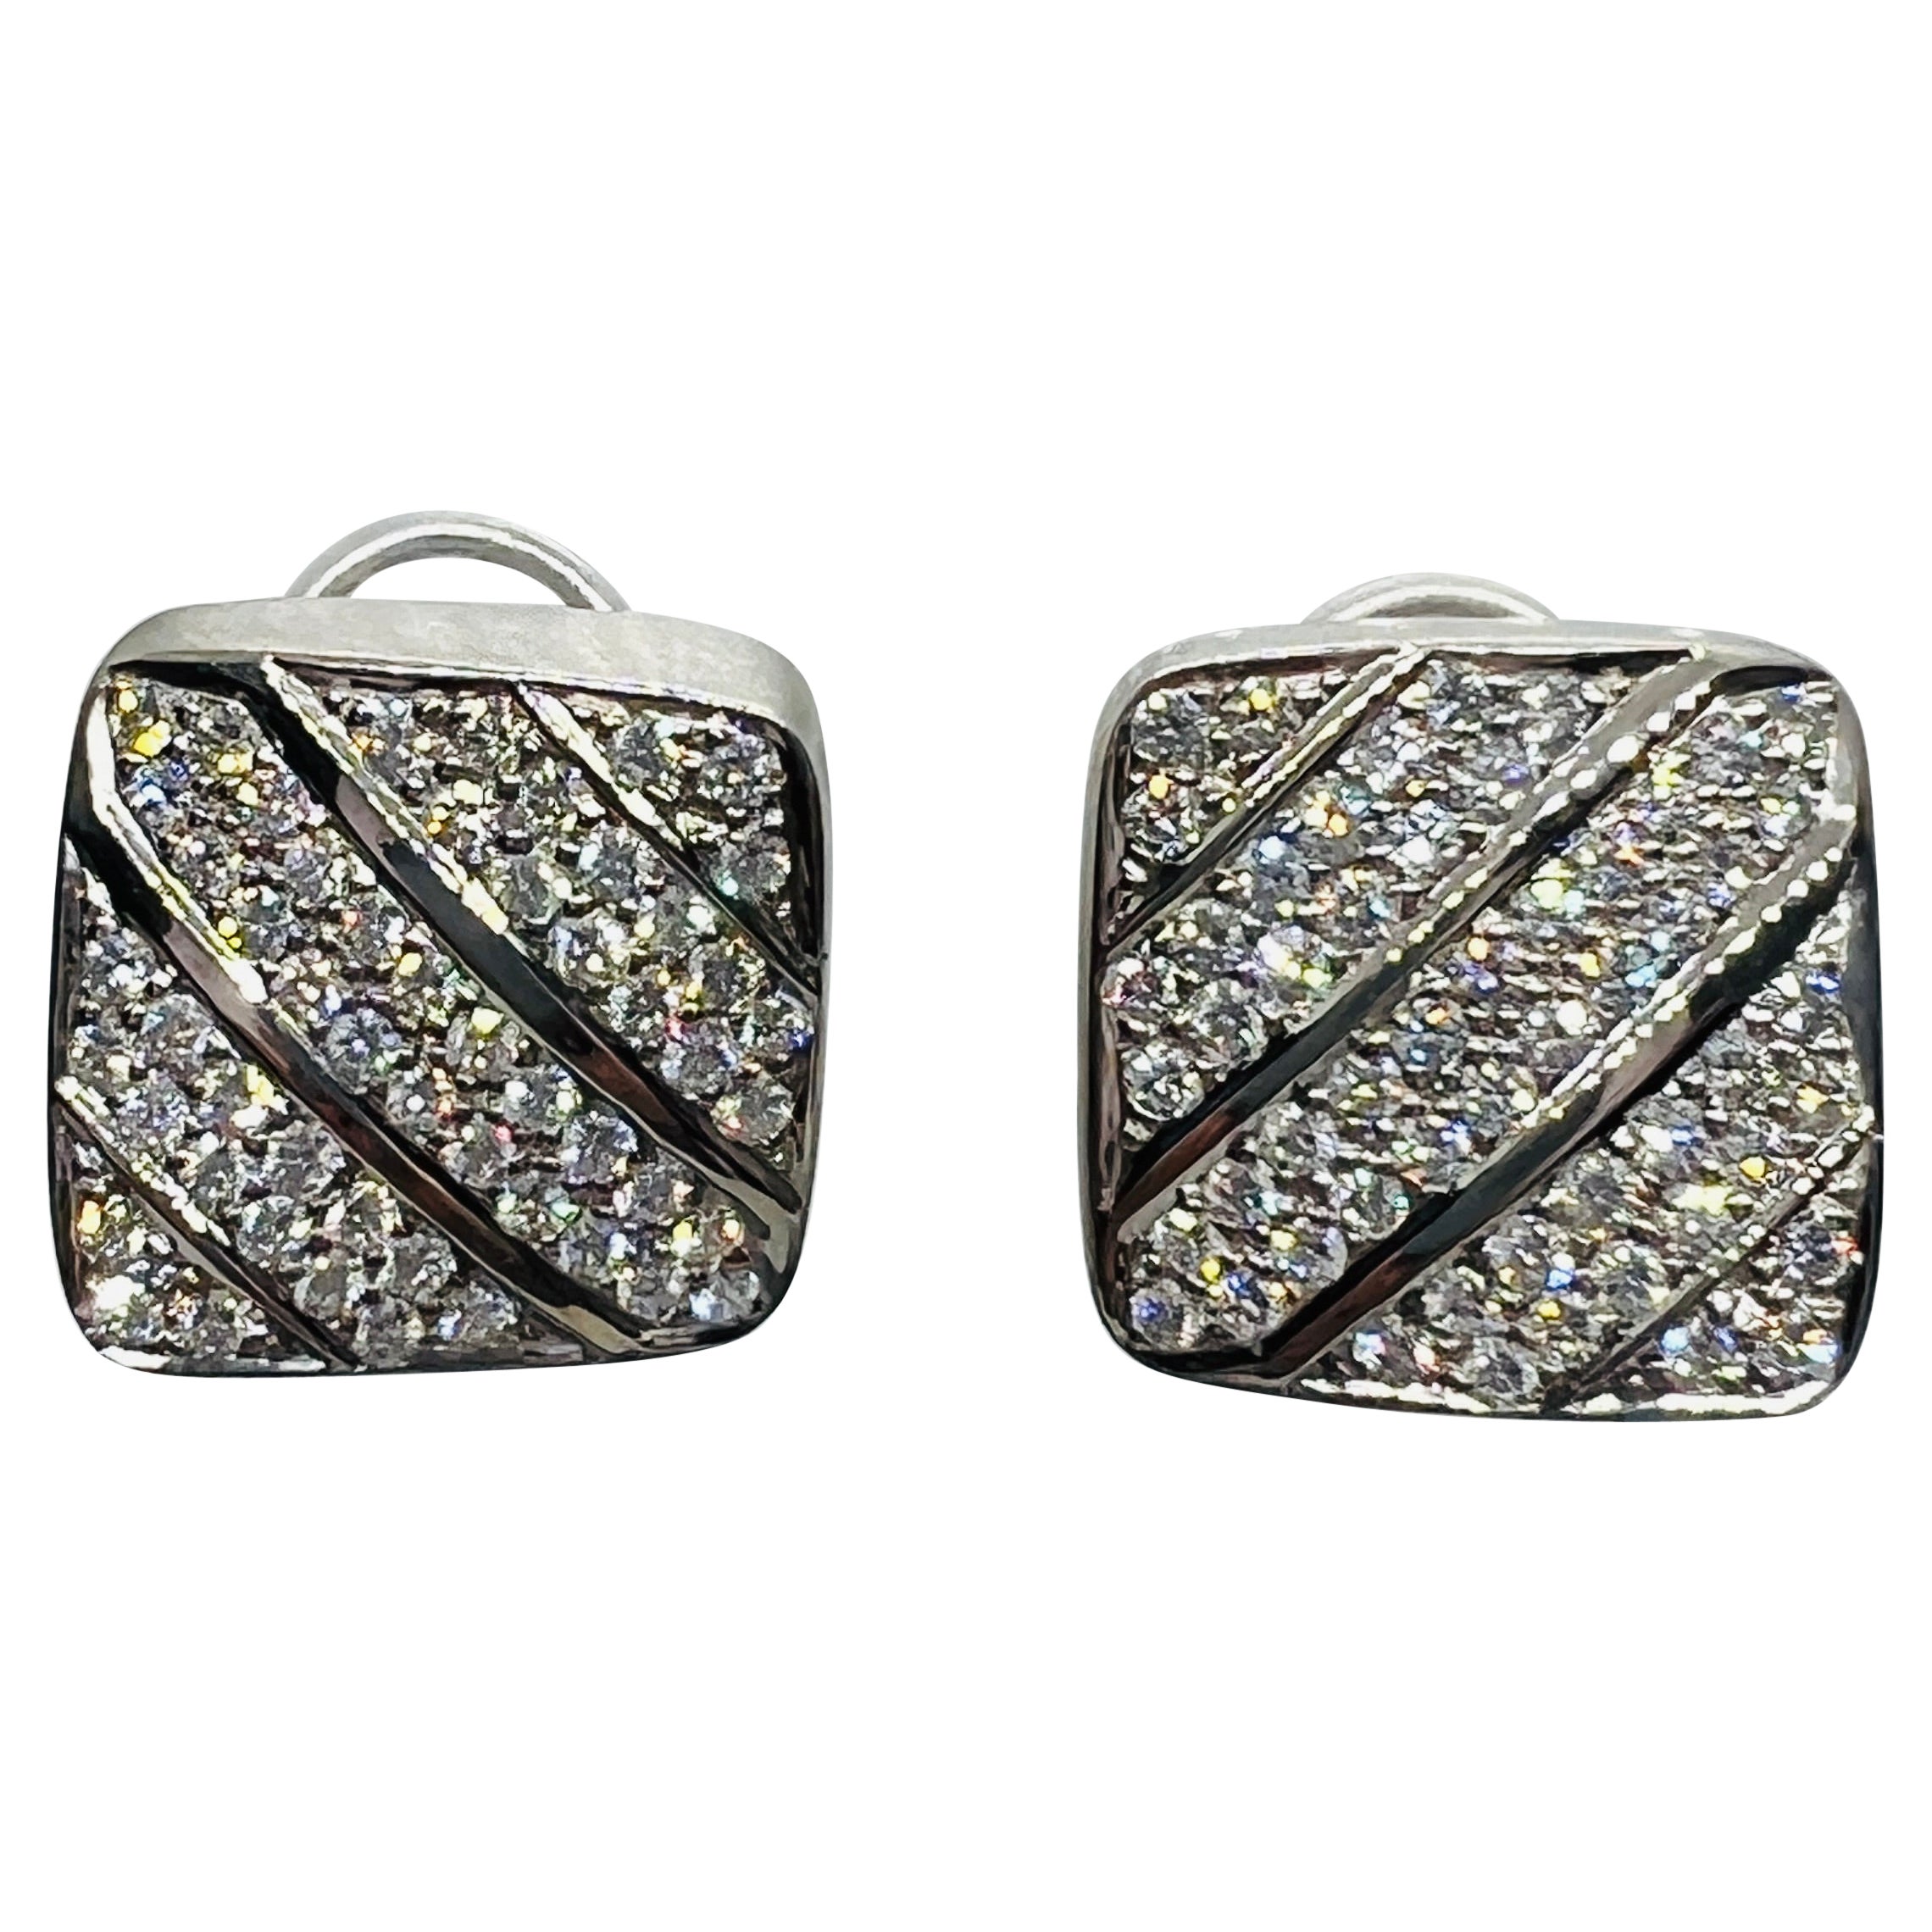 Designer Marlene Stowe 18K white Gold & Diamond Earrings 19.1 grams For Sale